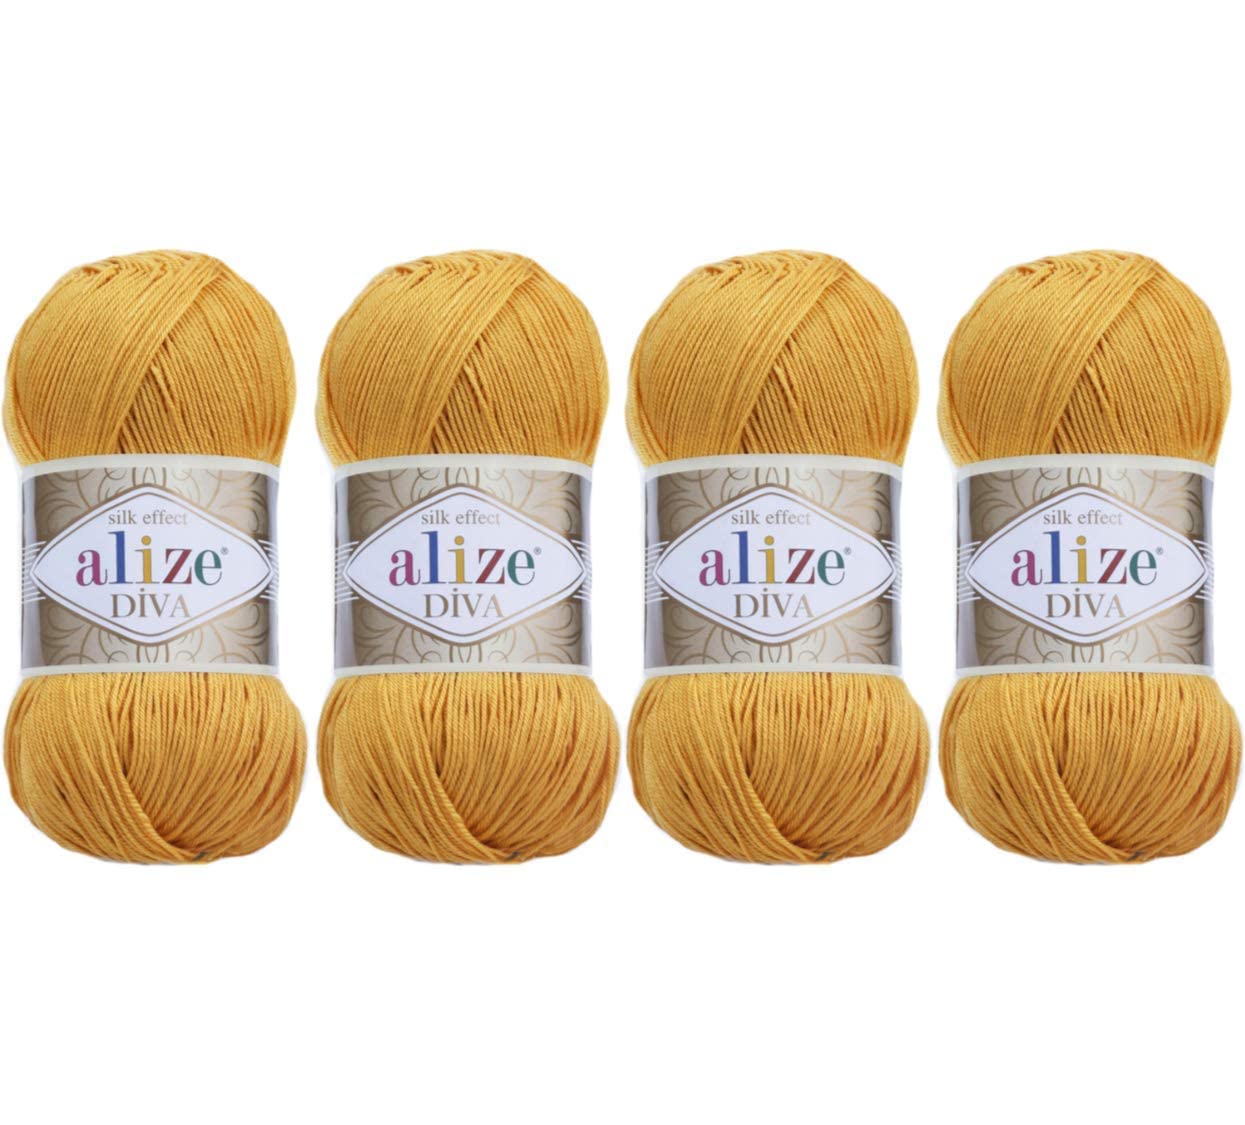 Hand Knitting Yarn 100% Microfiber Acrylic Yarn Alize Diva Silk Effect  Thread Crochet Art Lace Craft Lot Of 4 Skeins 400Gr 1532Y